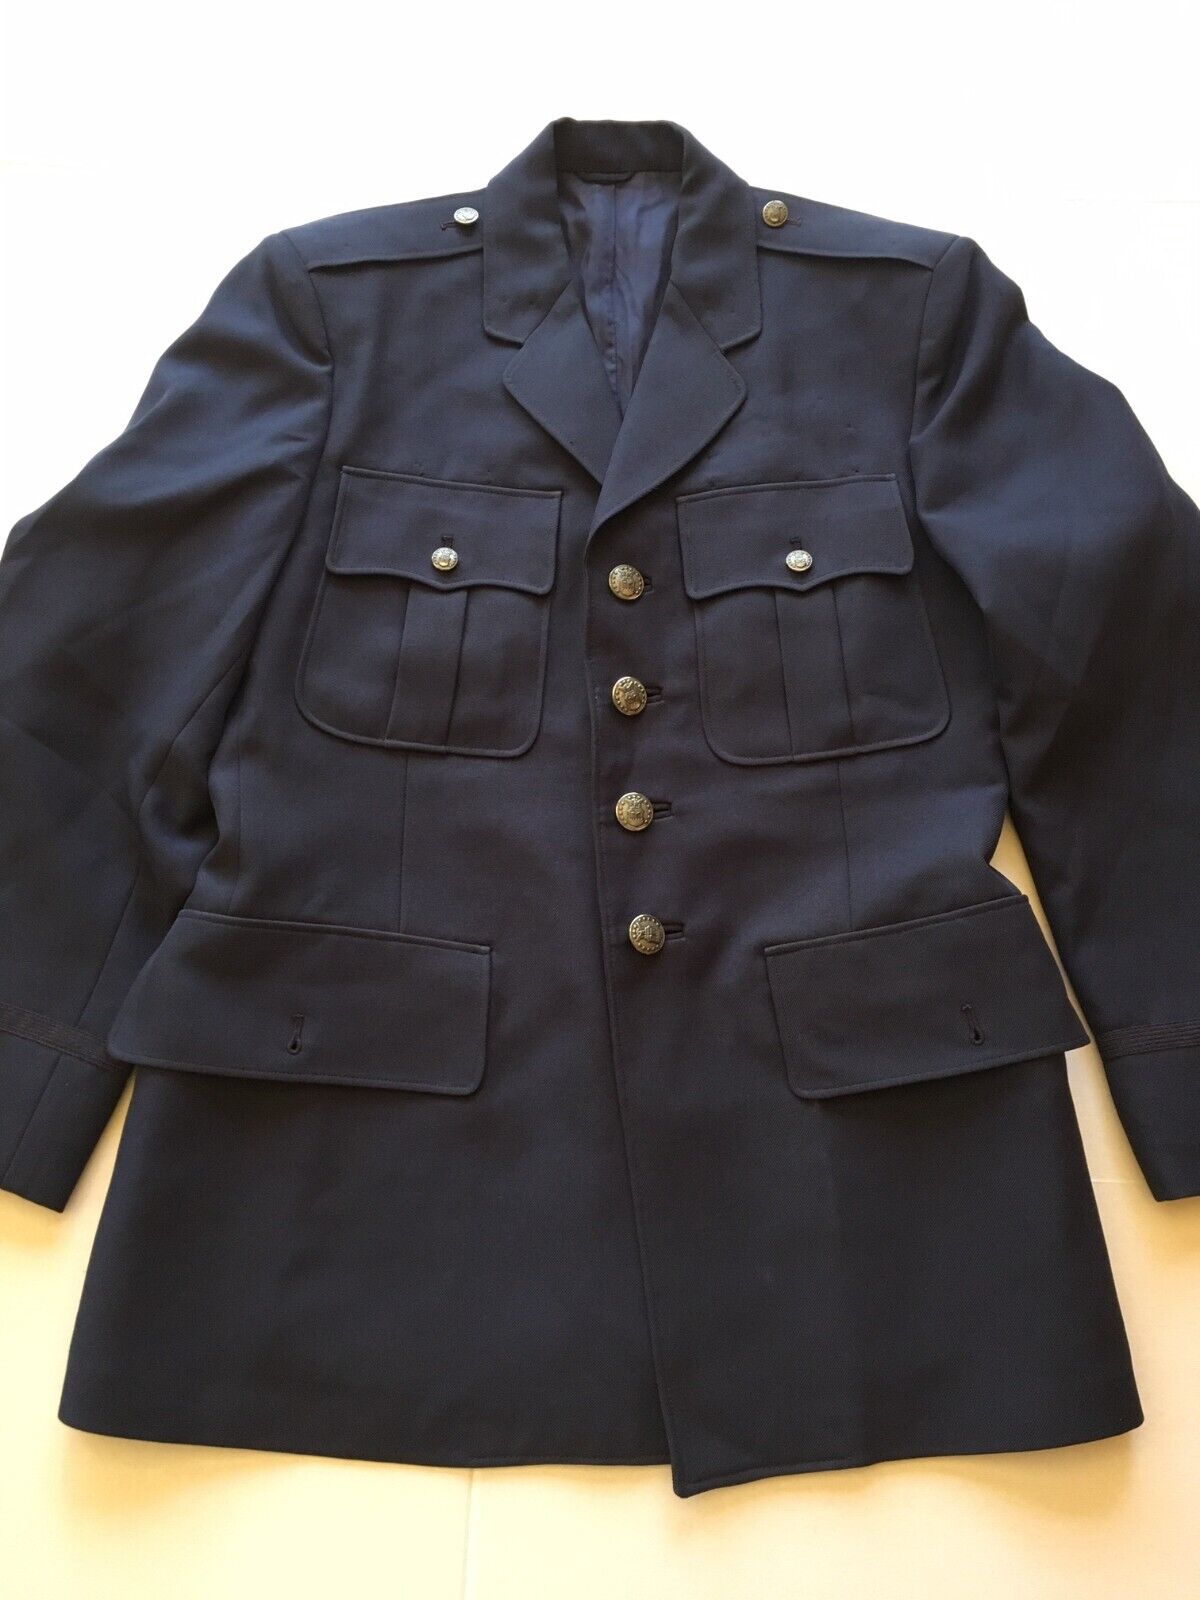 USAF Air Force Blue Service Dress Coat Jacket Men's Size 39 - 40 - Vintage VTG